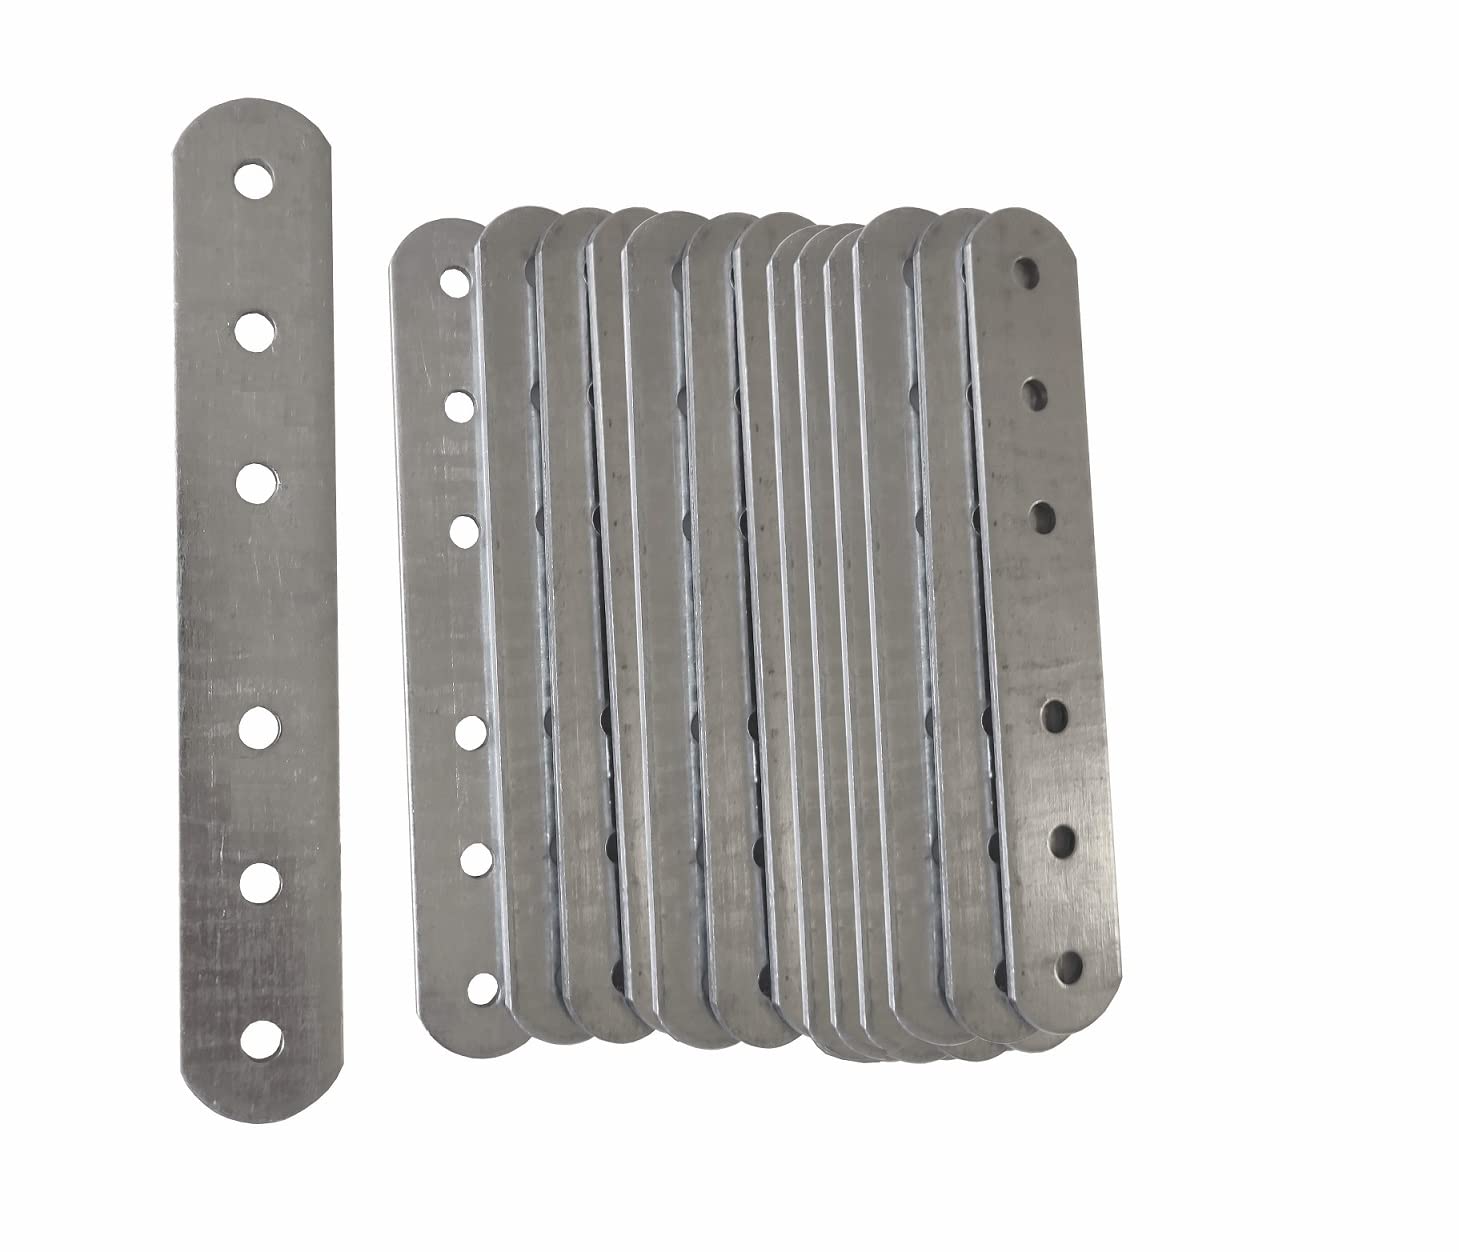 CNC-Aluminium-Stahl-Prototyping-Bearbeitung von Teilen, Laserschneiden und Fräsen